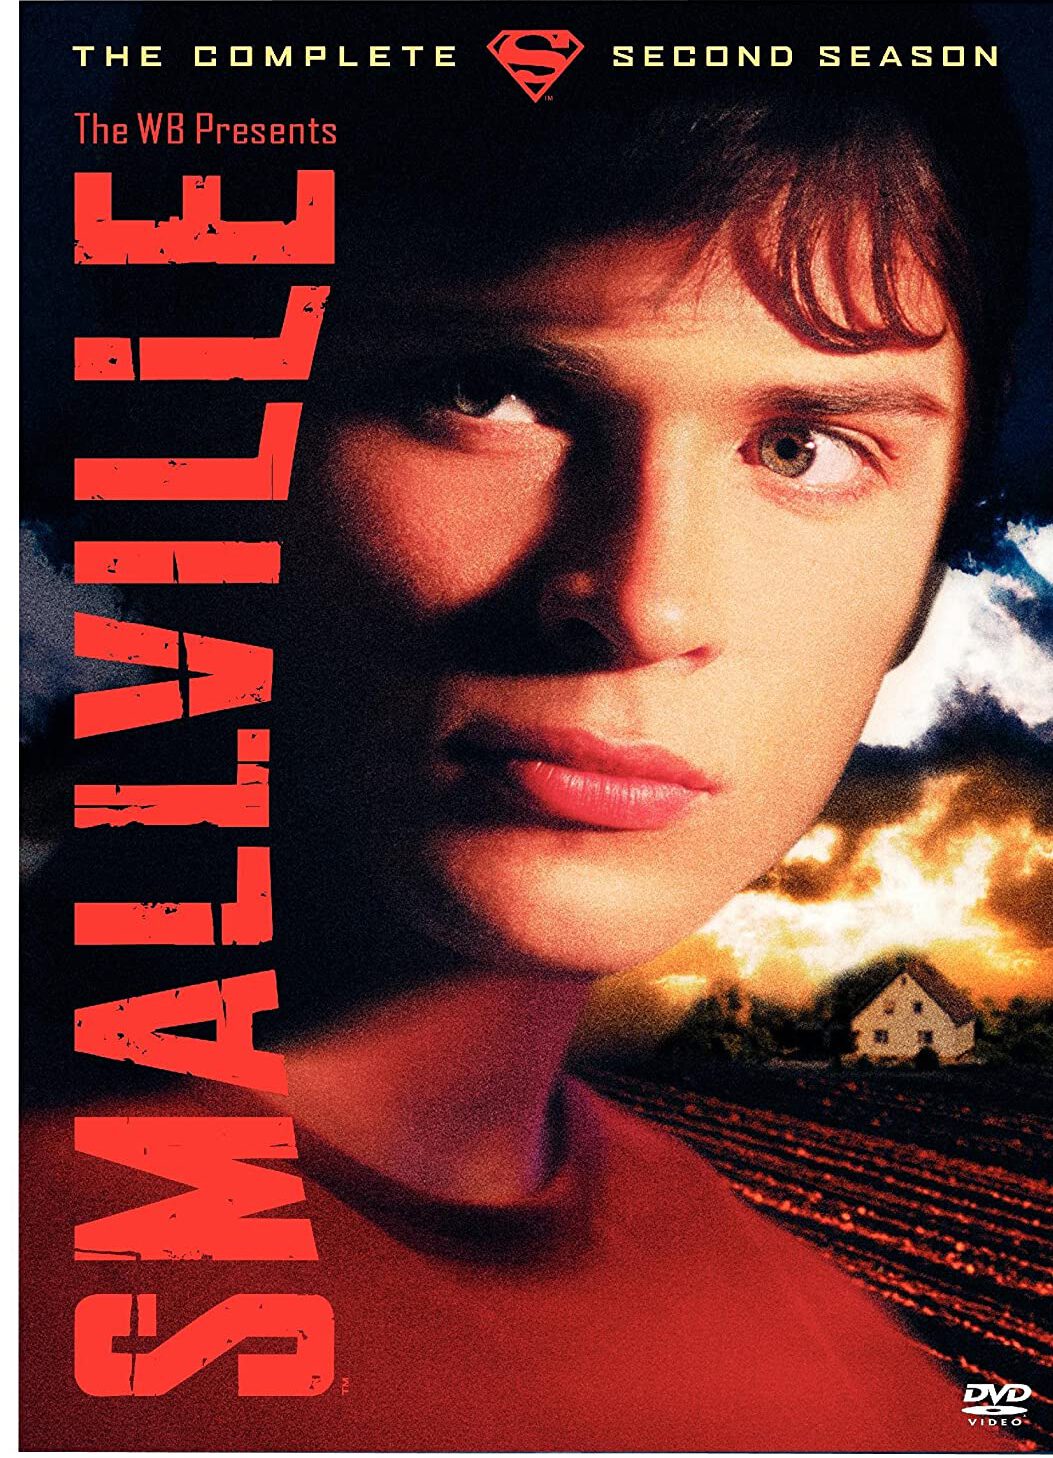 ดูหนังออนไลน์ฟรี Smallville สมอลวิลล์ หนุ่มน้อยซุปเปอร์แมน ปี 2 ตอนที่ 23